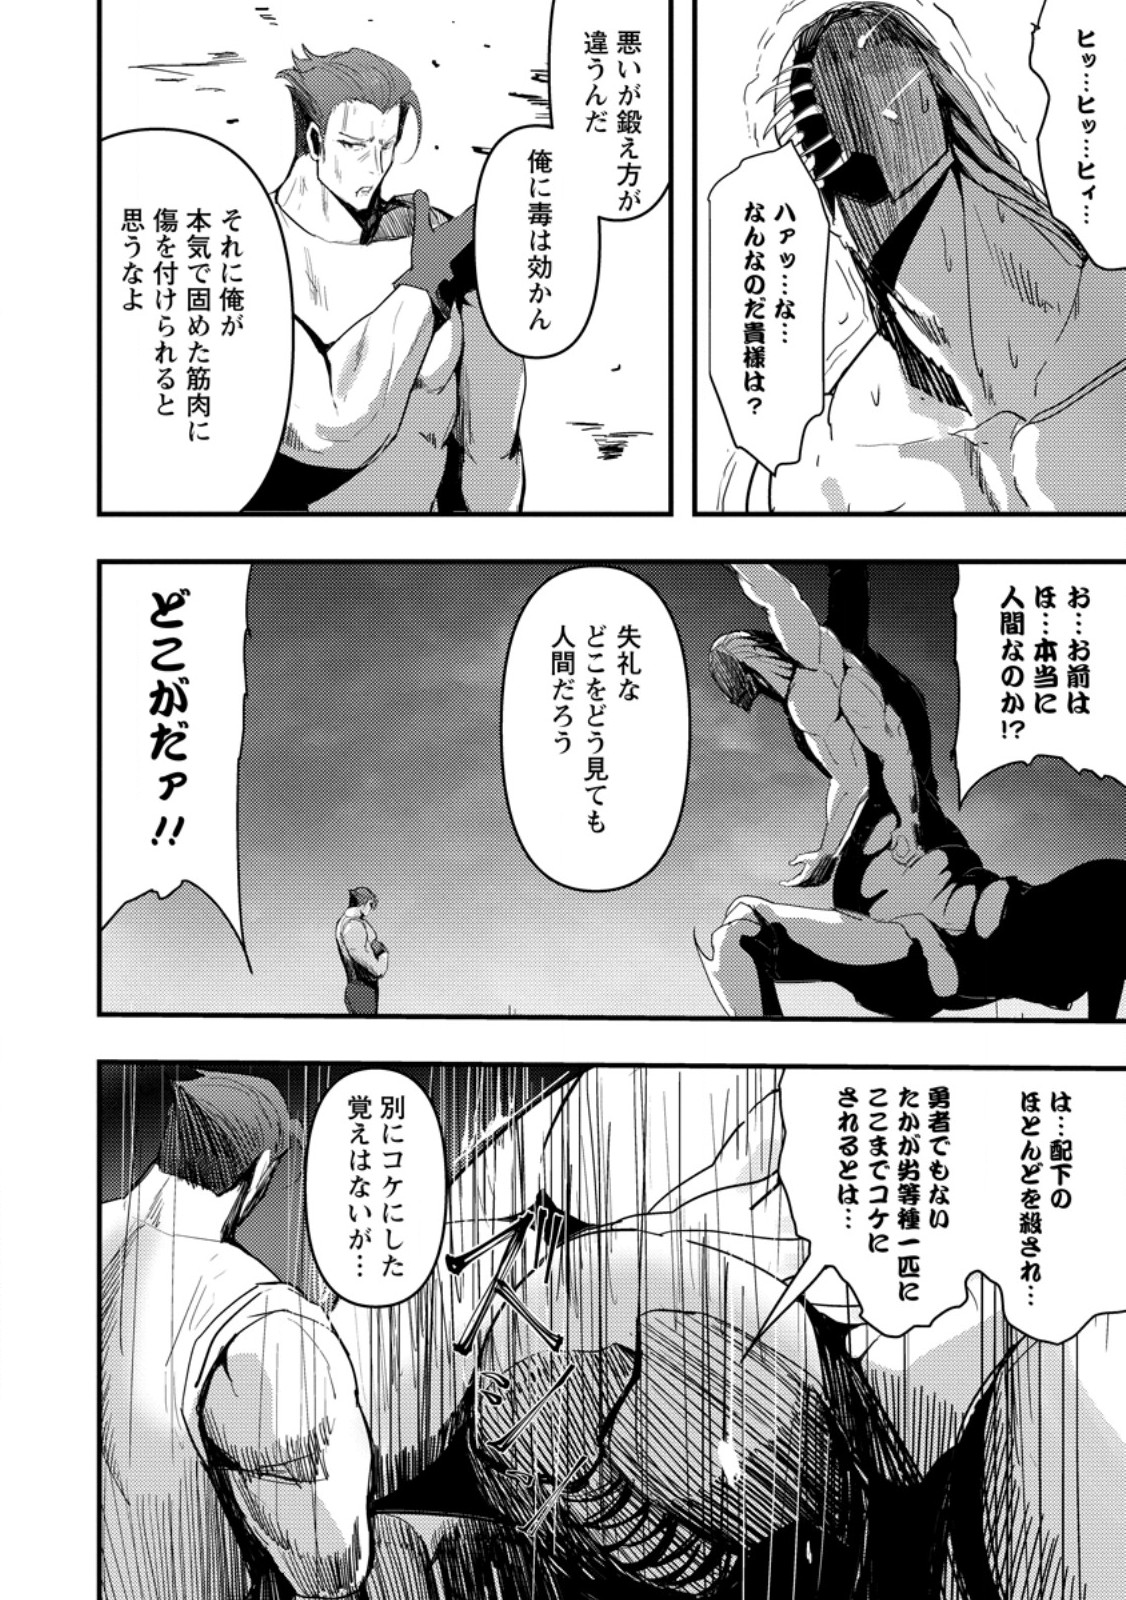 Doumo, Yuusha no Chichi desu. - Chapter 11.2 - Page 2